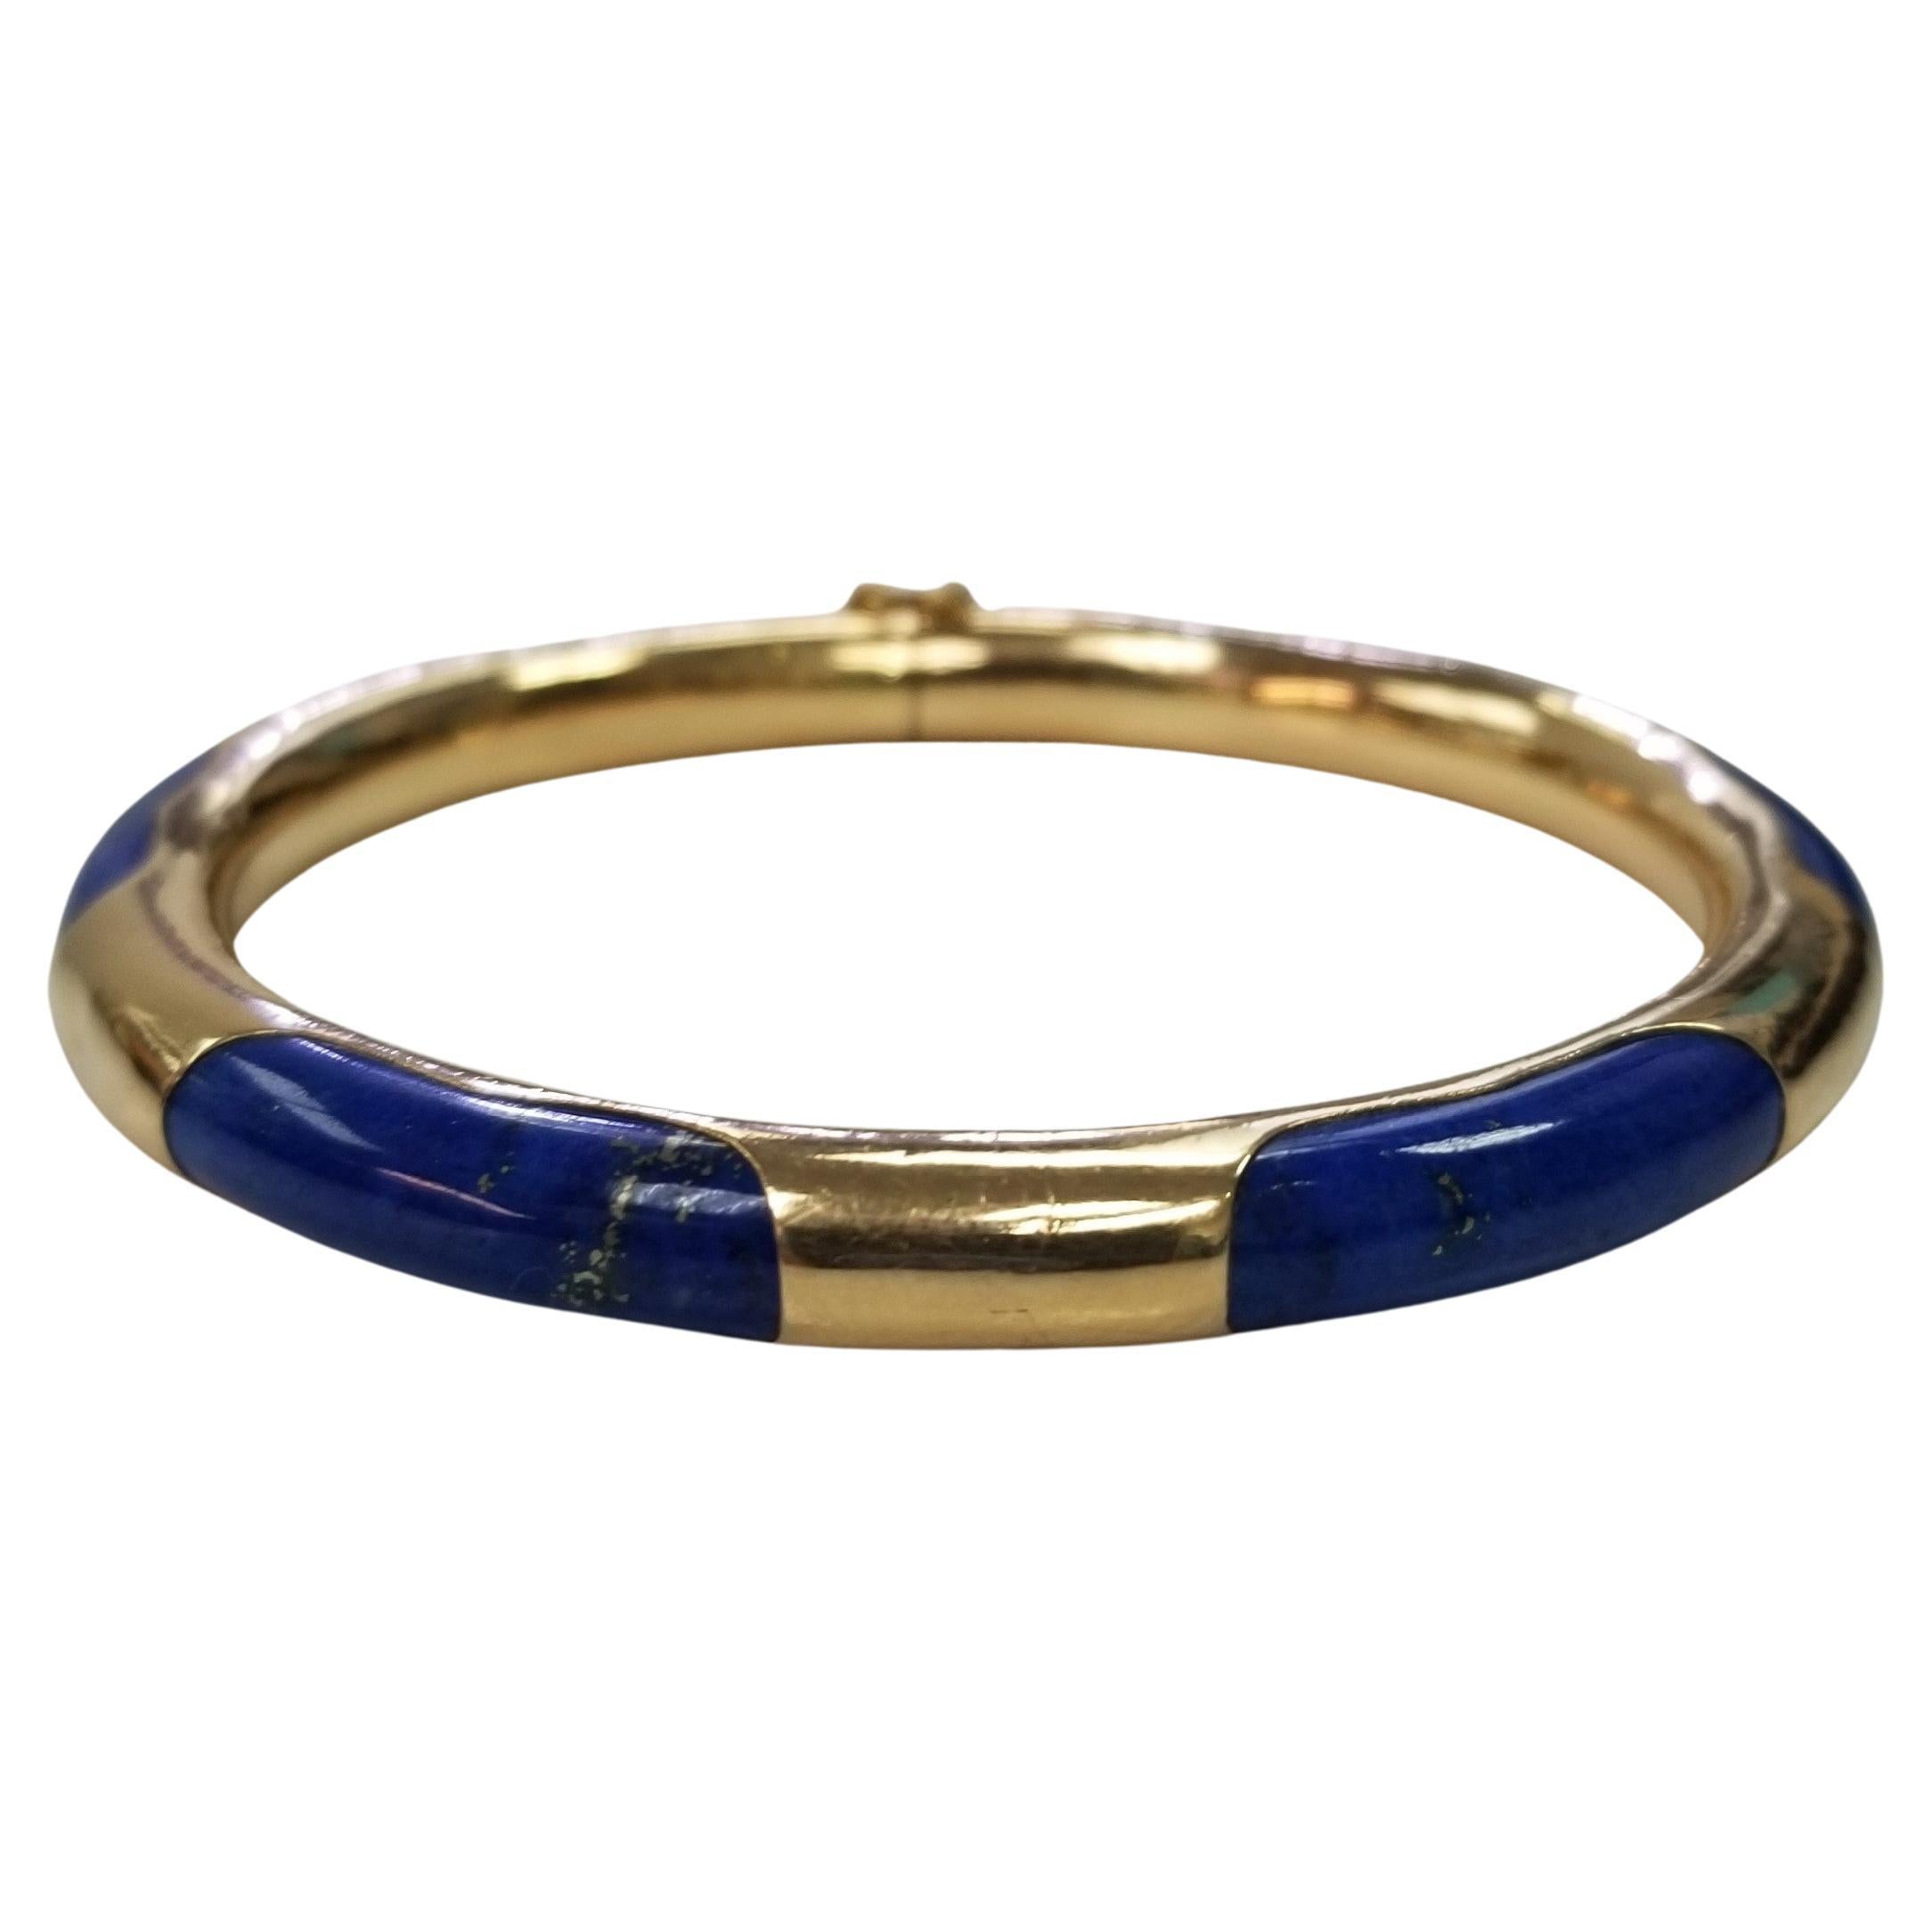 14k Gold and Lapis Lazuli Bangle Bracelet